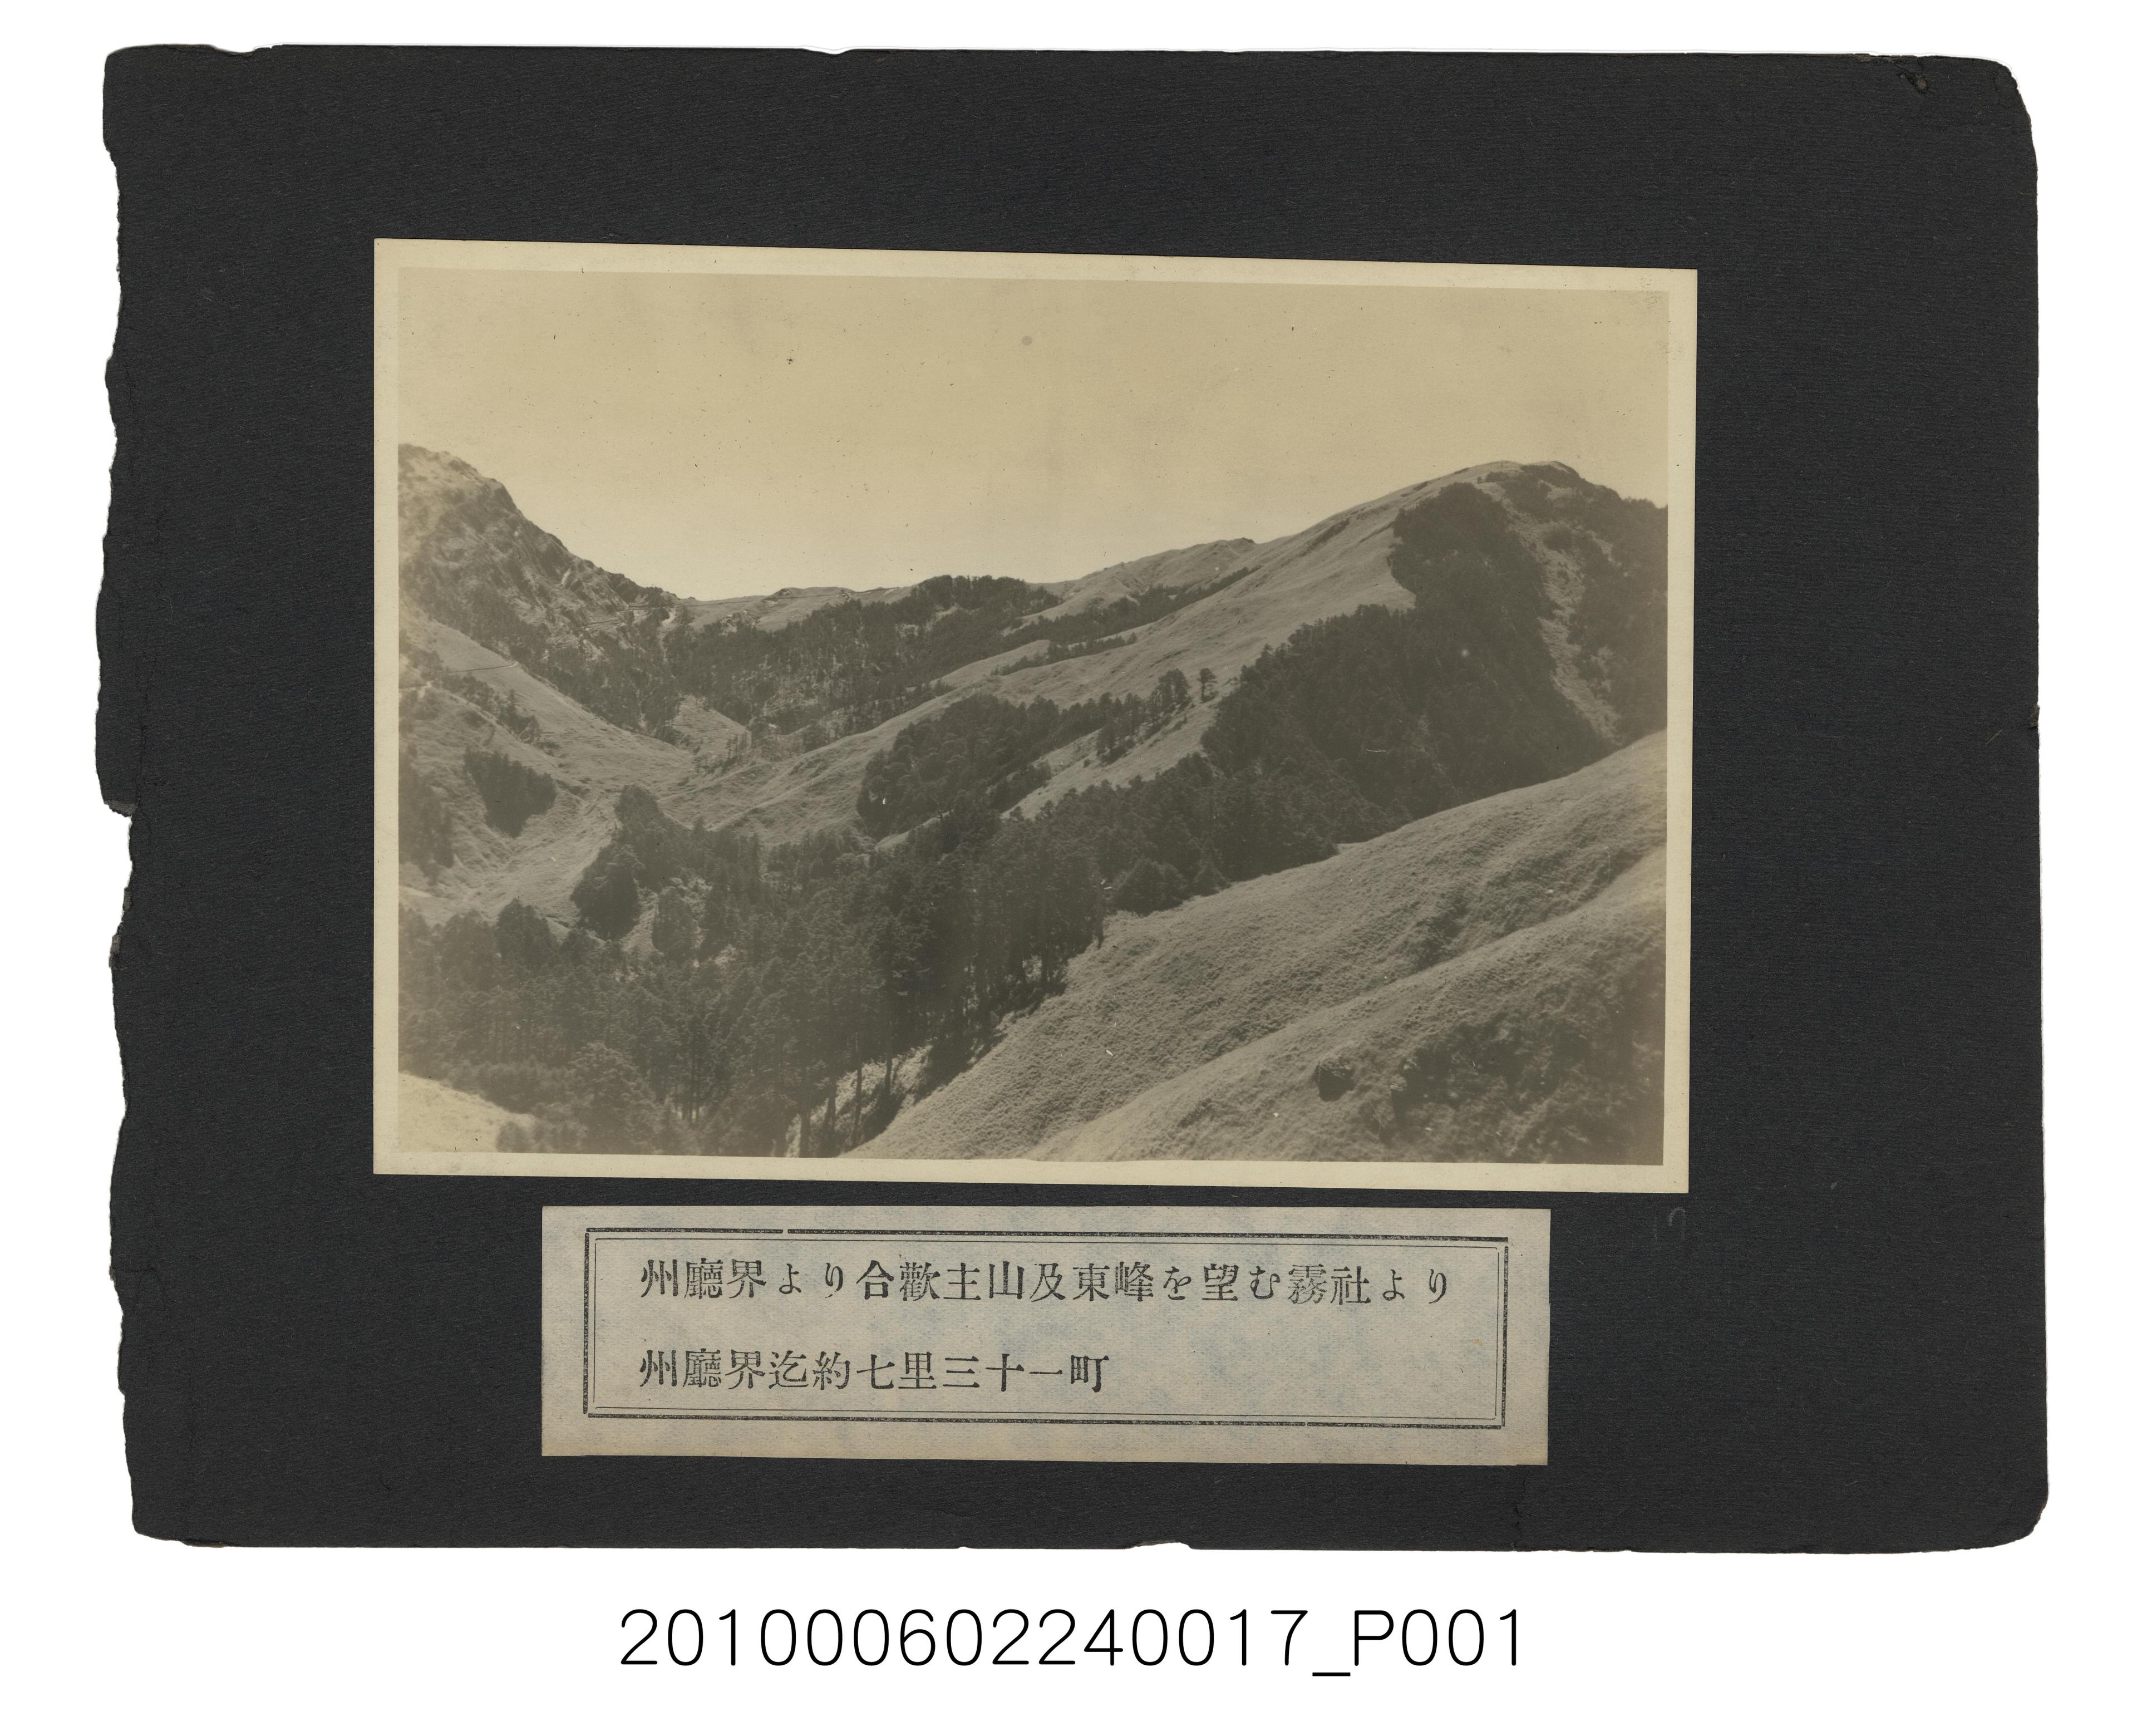 州廳界所見合歡主山及東峰 (共1張)